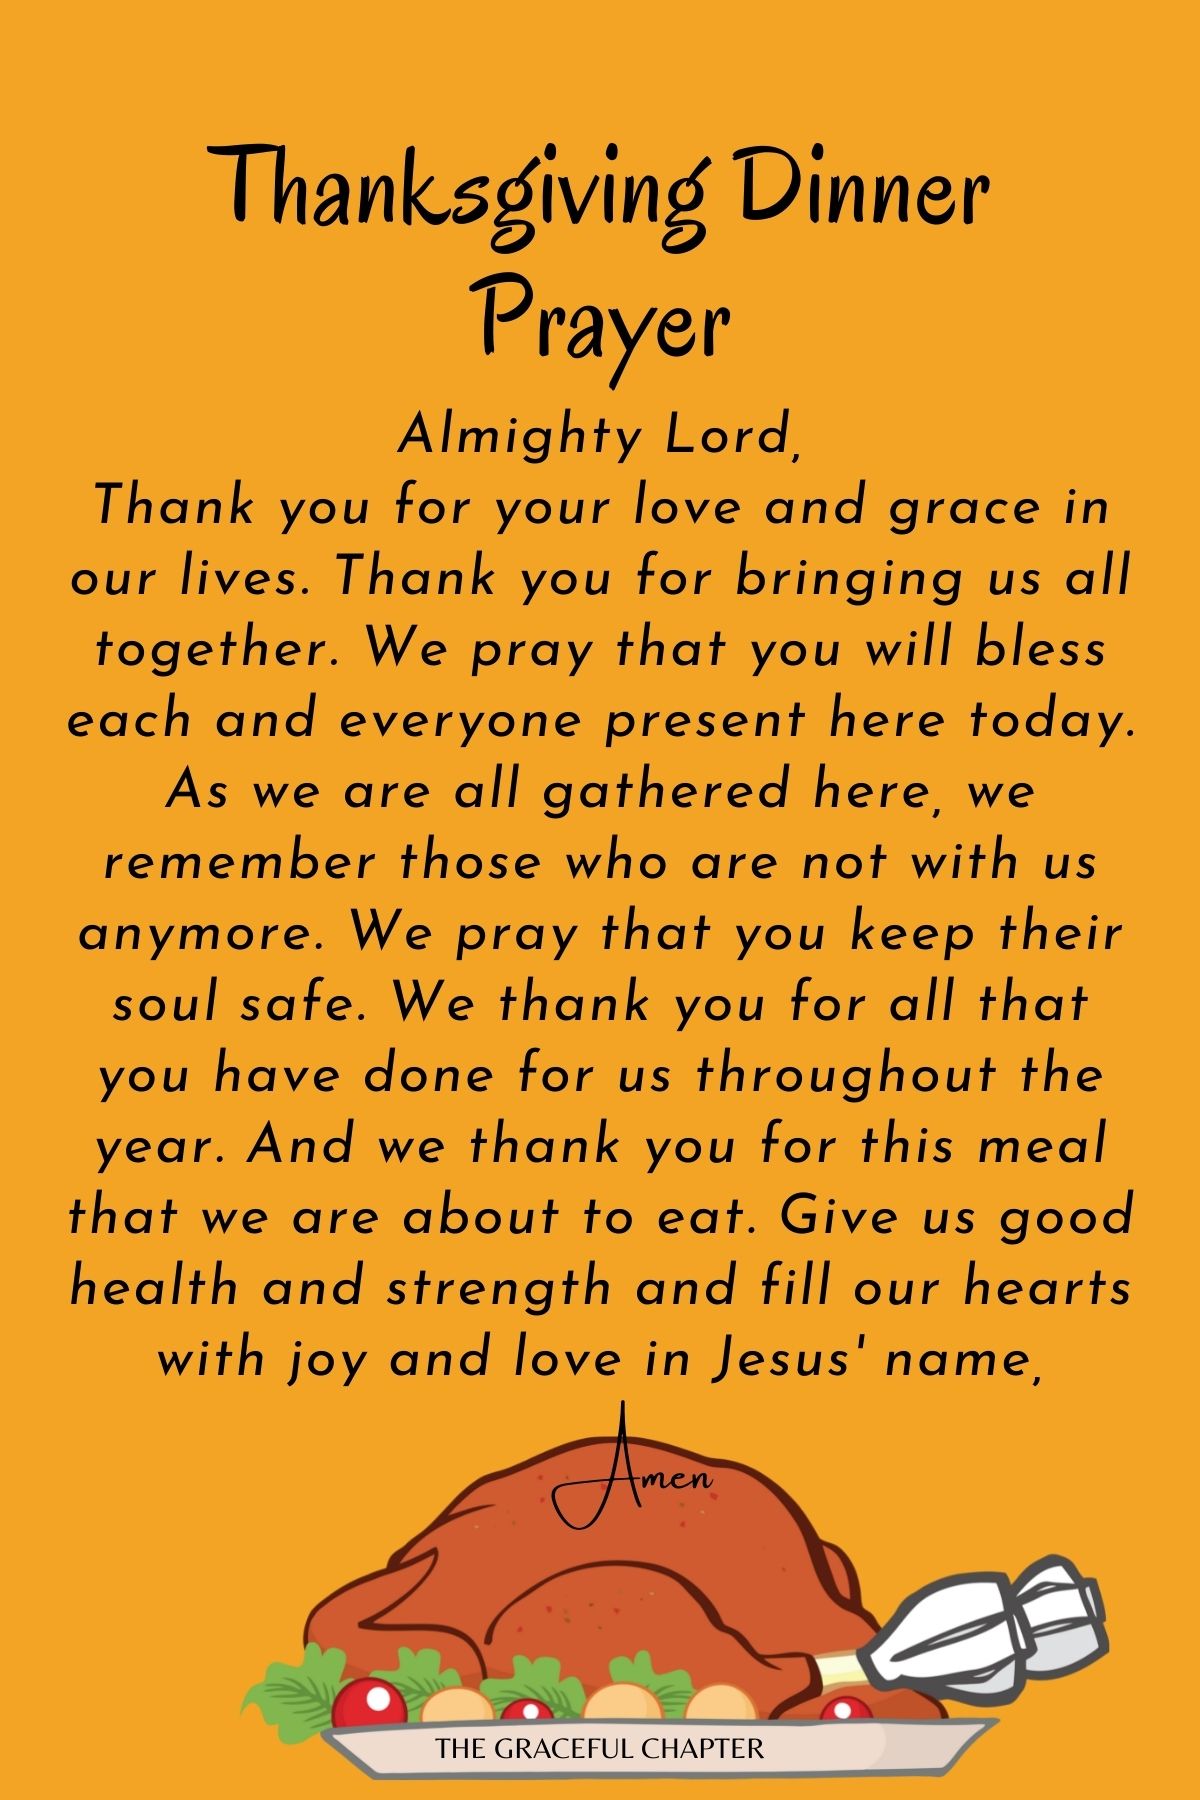 Thanksgiving dinner prayer